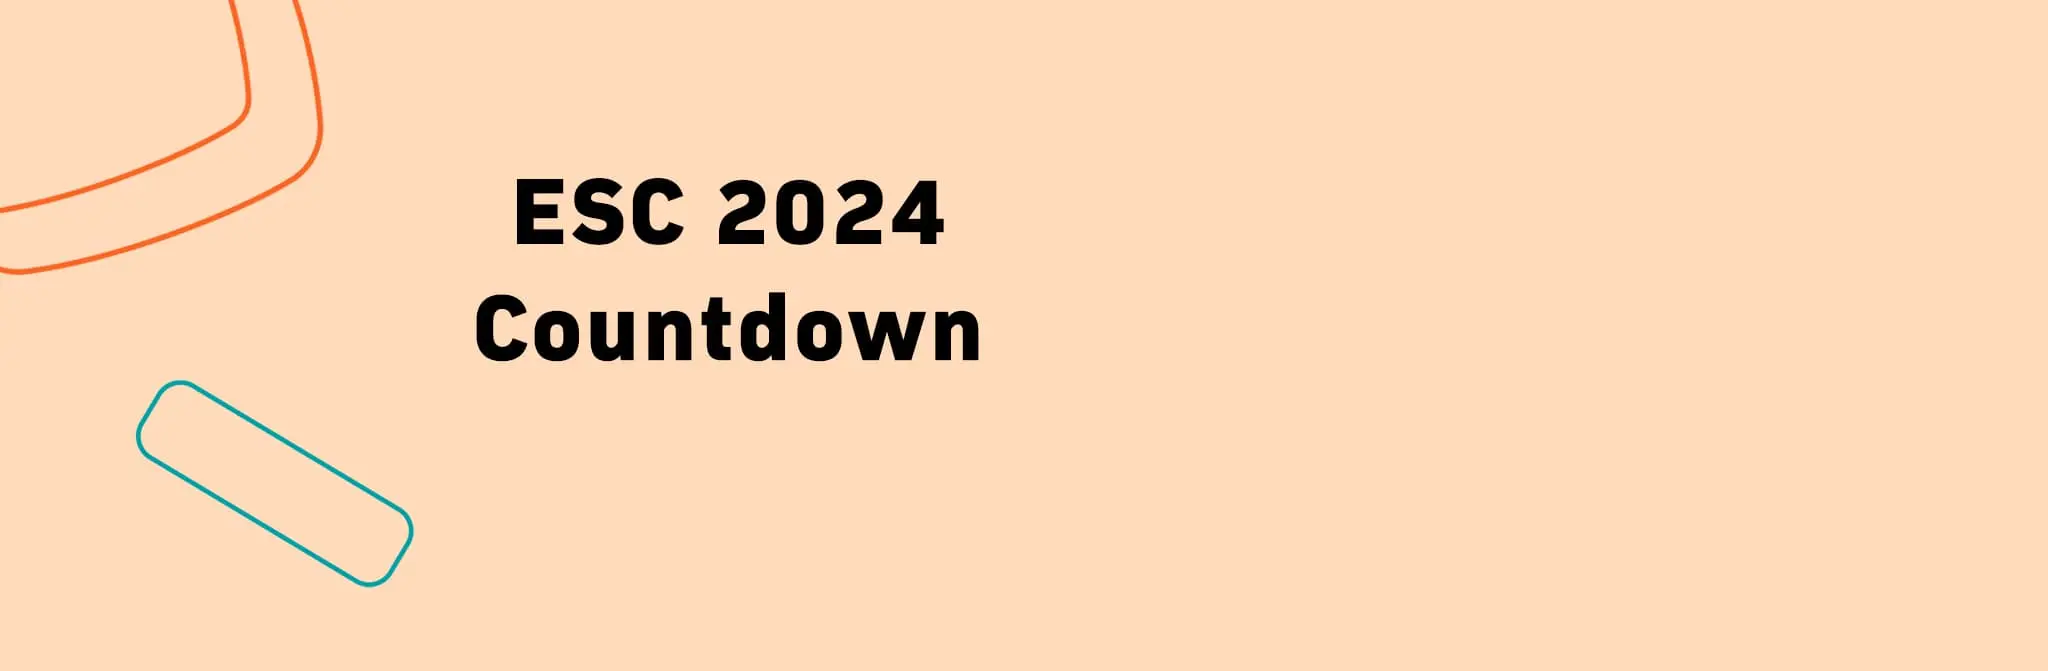 ESC Eurovision Song Contest 2024 Countdown